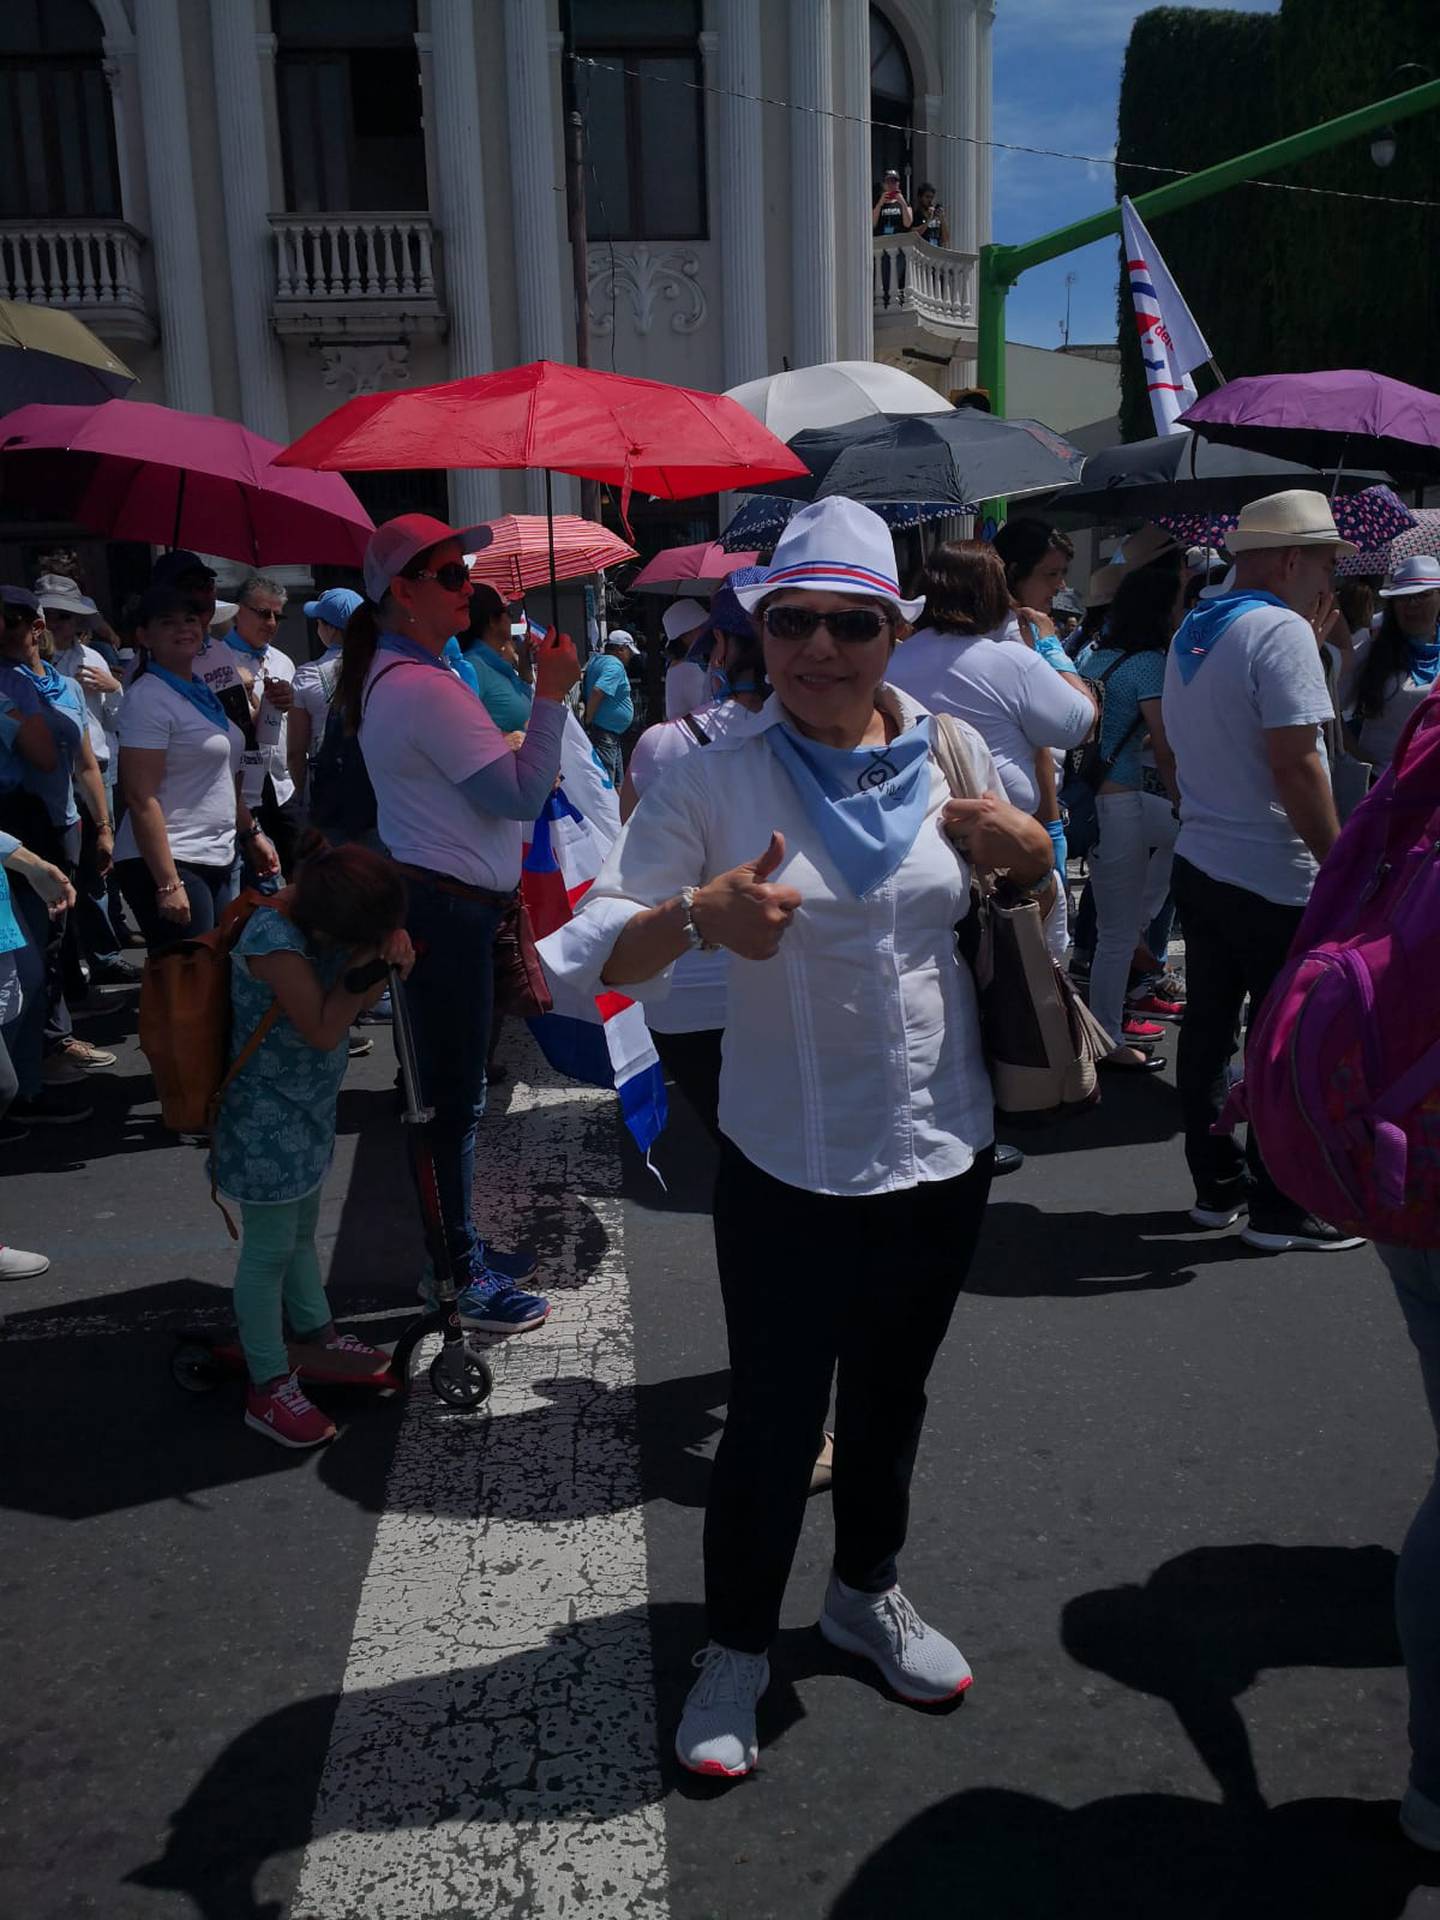 Sheila Rosales Ortega, una licenciada en sicología, tiene 68 años y se sentó con nosotros para hablar de “los desaciertos en la juventud”, el libro que escribió el año pasado en el cual cuenta su historia de vida que está marcada por cuatro abortos totalmente decididos por ella